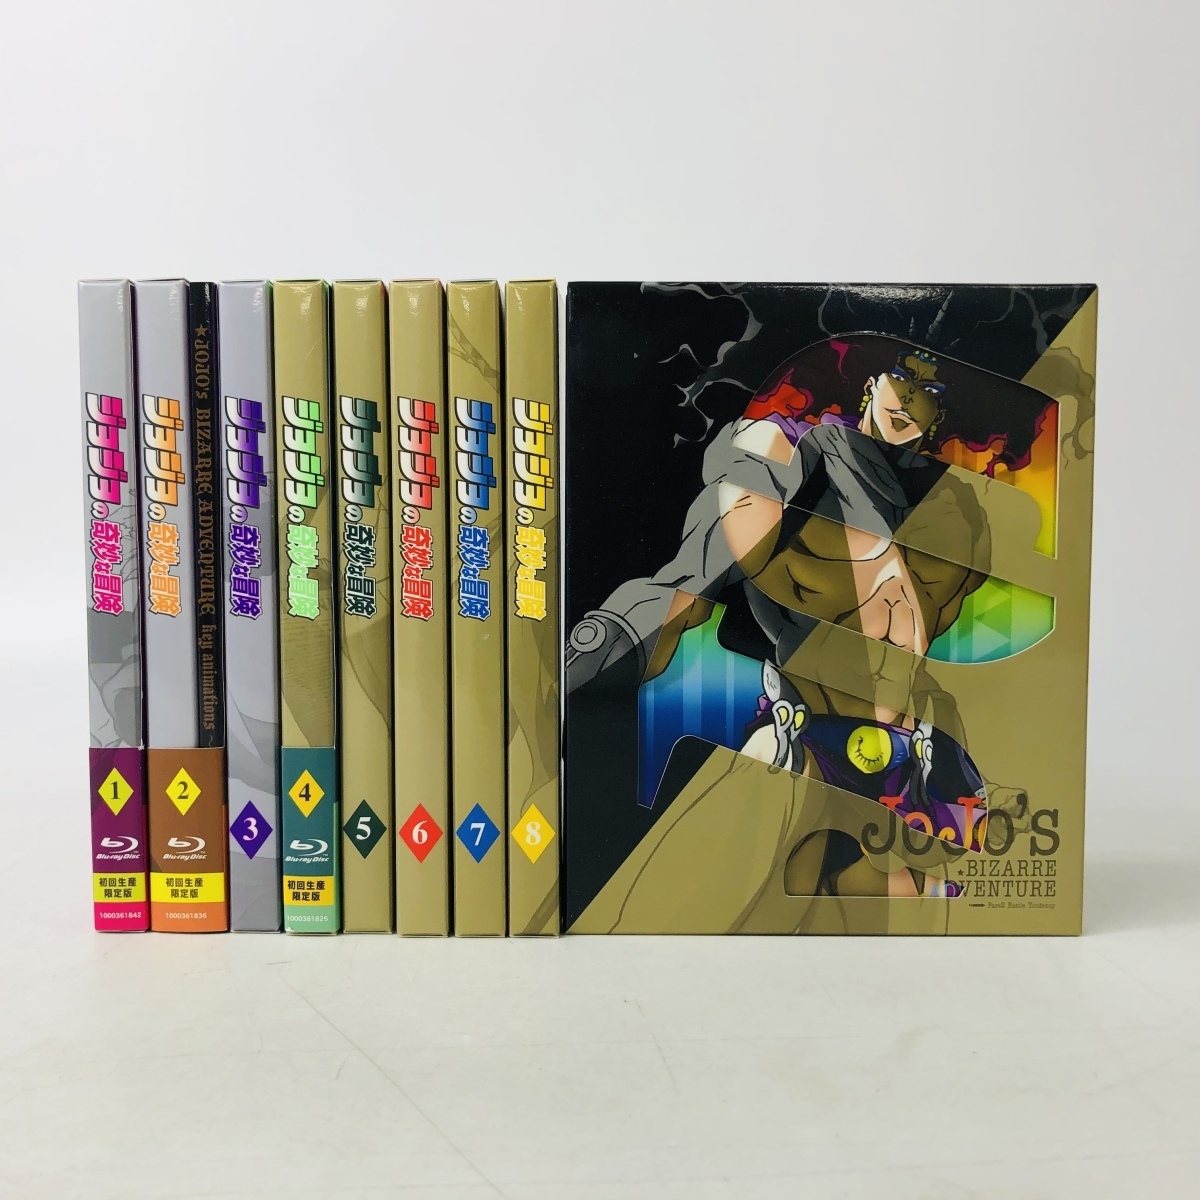 Blu Ray ジョジョの奇妙な冒険 1部 2部 Vol 1 9 全9巻セット 初回生産限定版 日本 売買されたオークション情報 Yahooの商品情報をアーカイブ公開 オークファン Aucfan Com